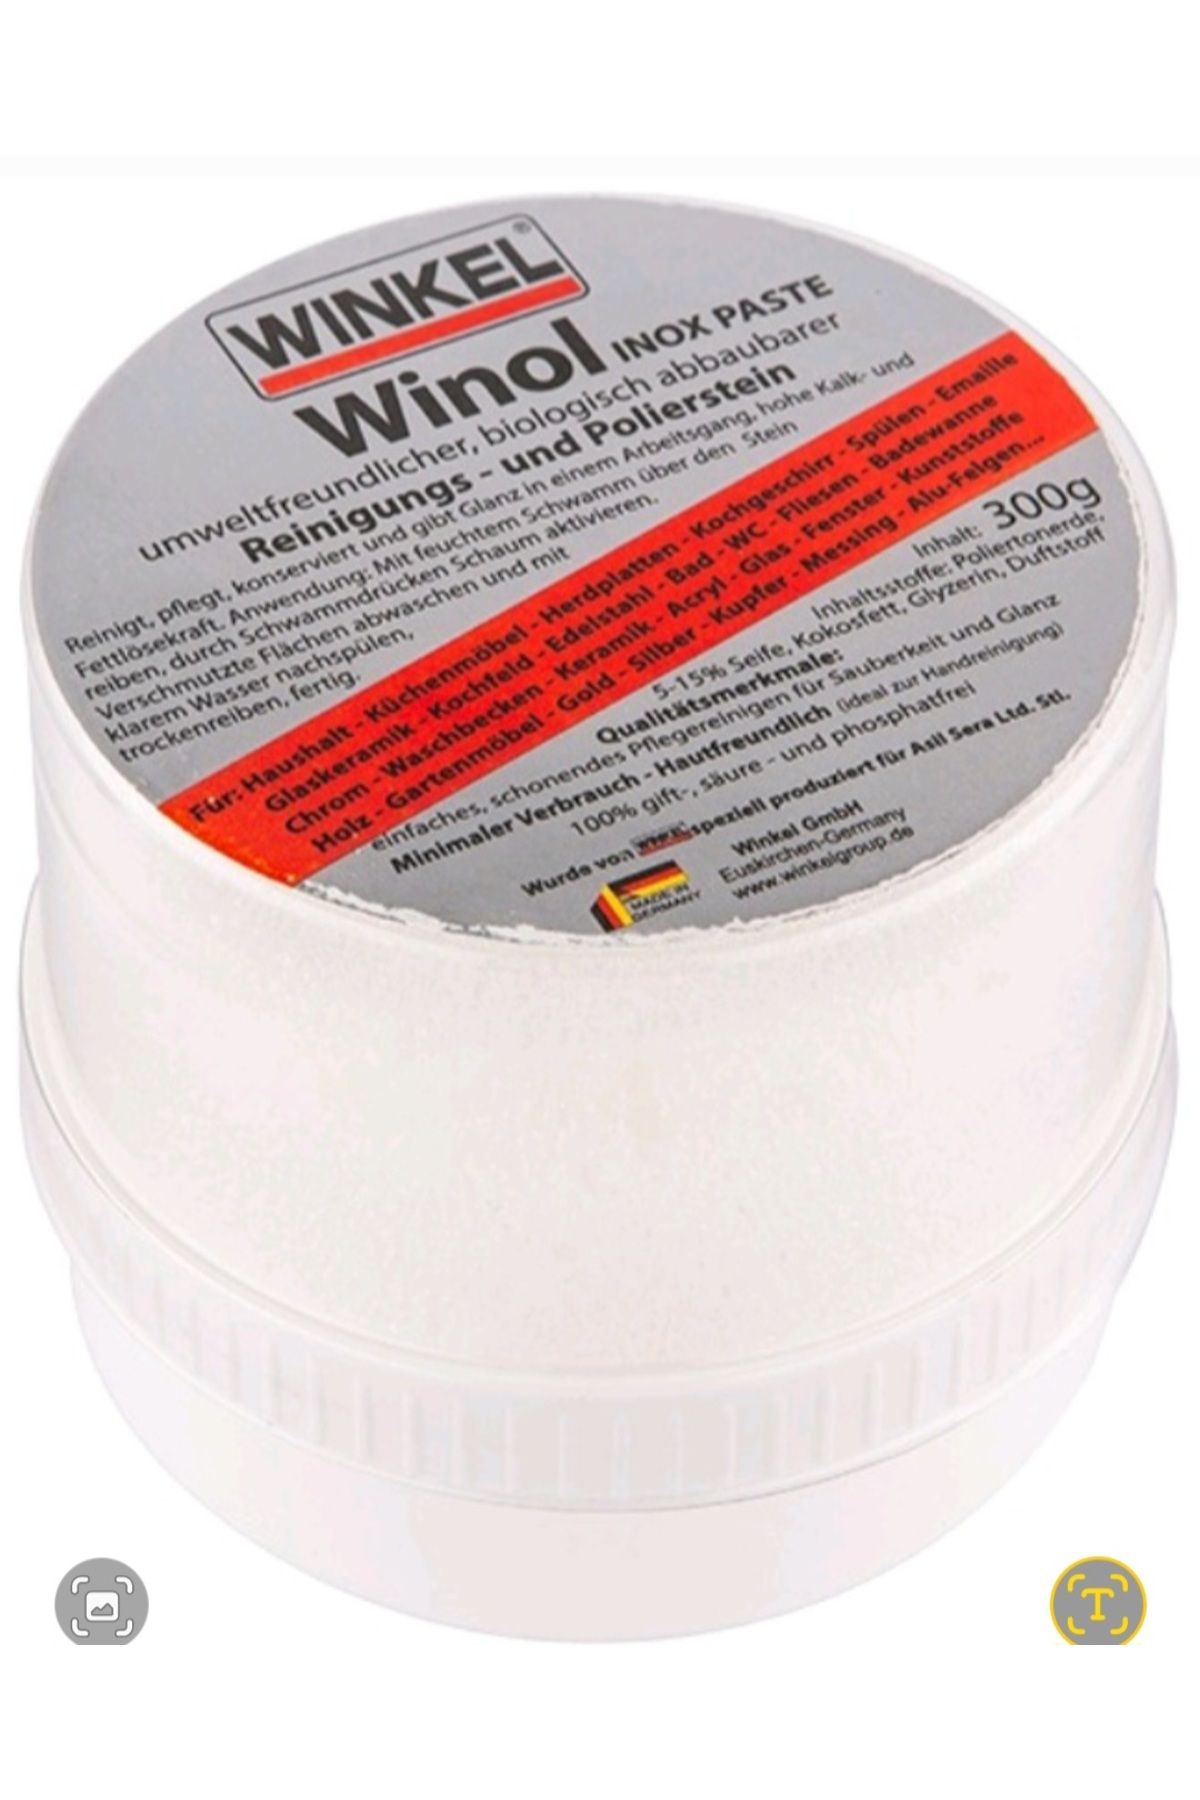 Winkel Çelik Eviye  Bakım Temizlik Ürünü Inox Paste